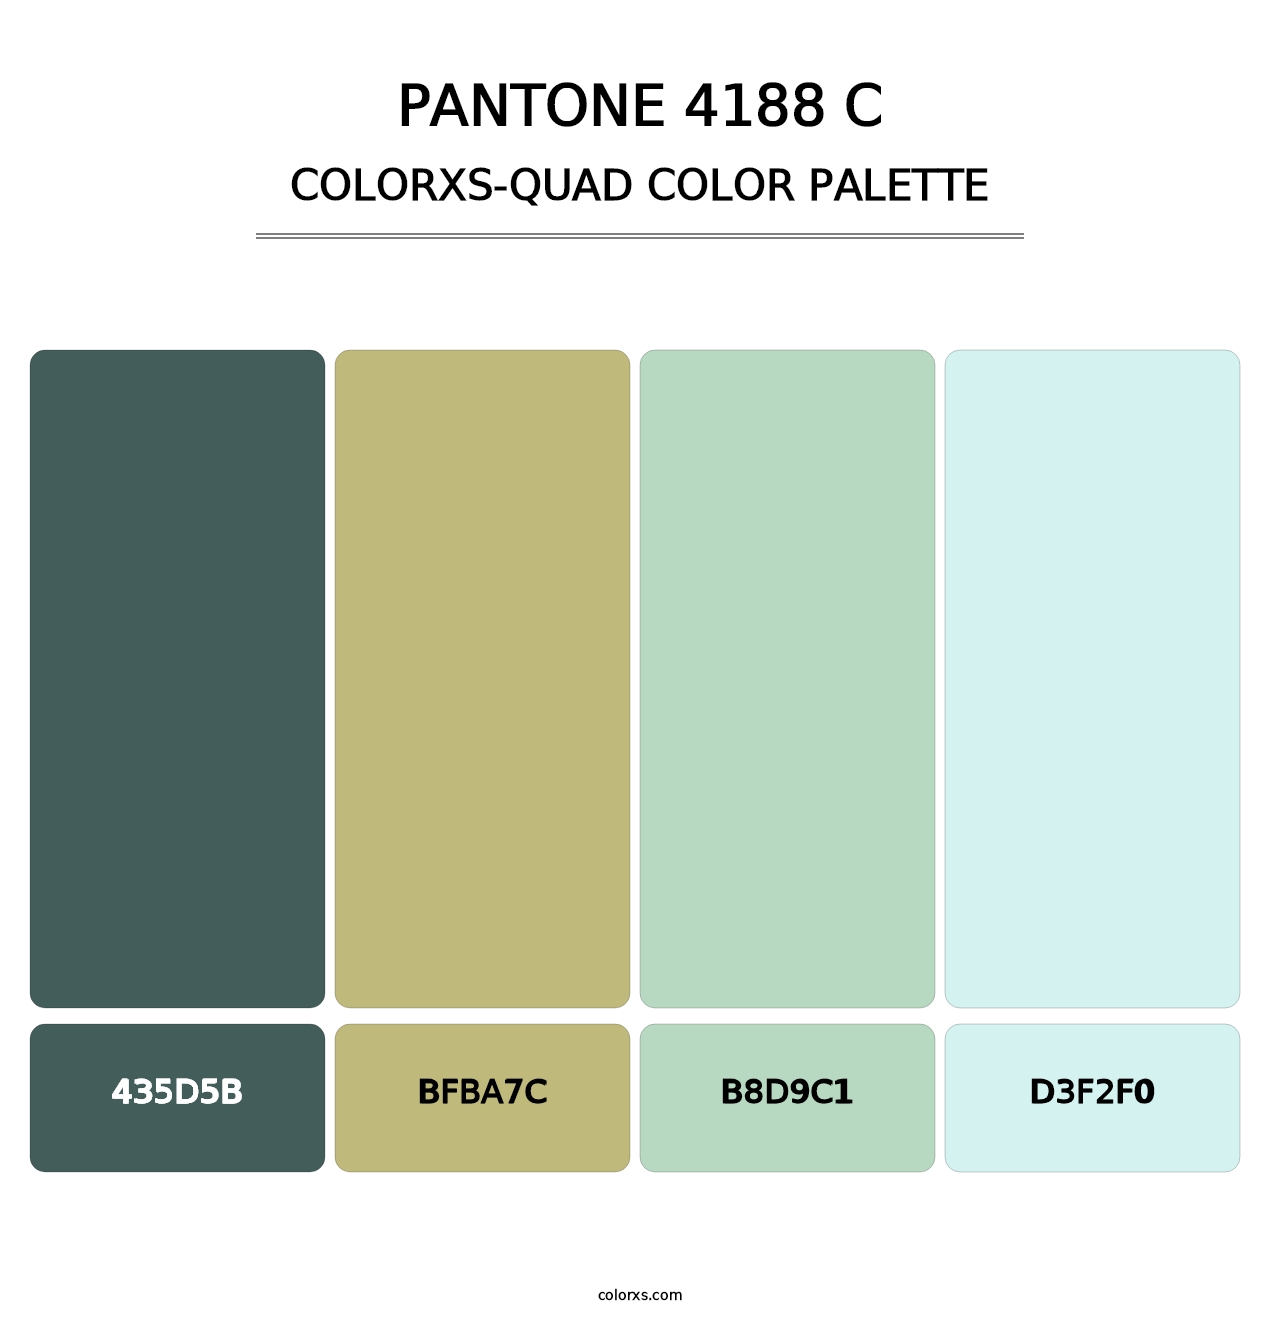 PANTONE 4188 C - Colorxs Quad Palette